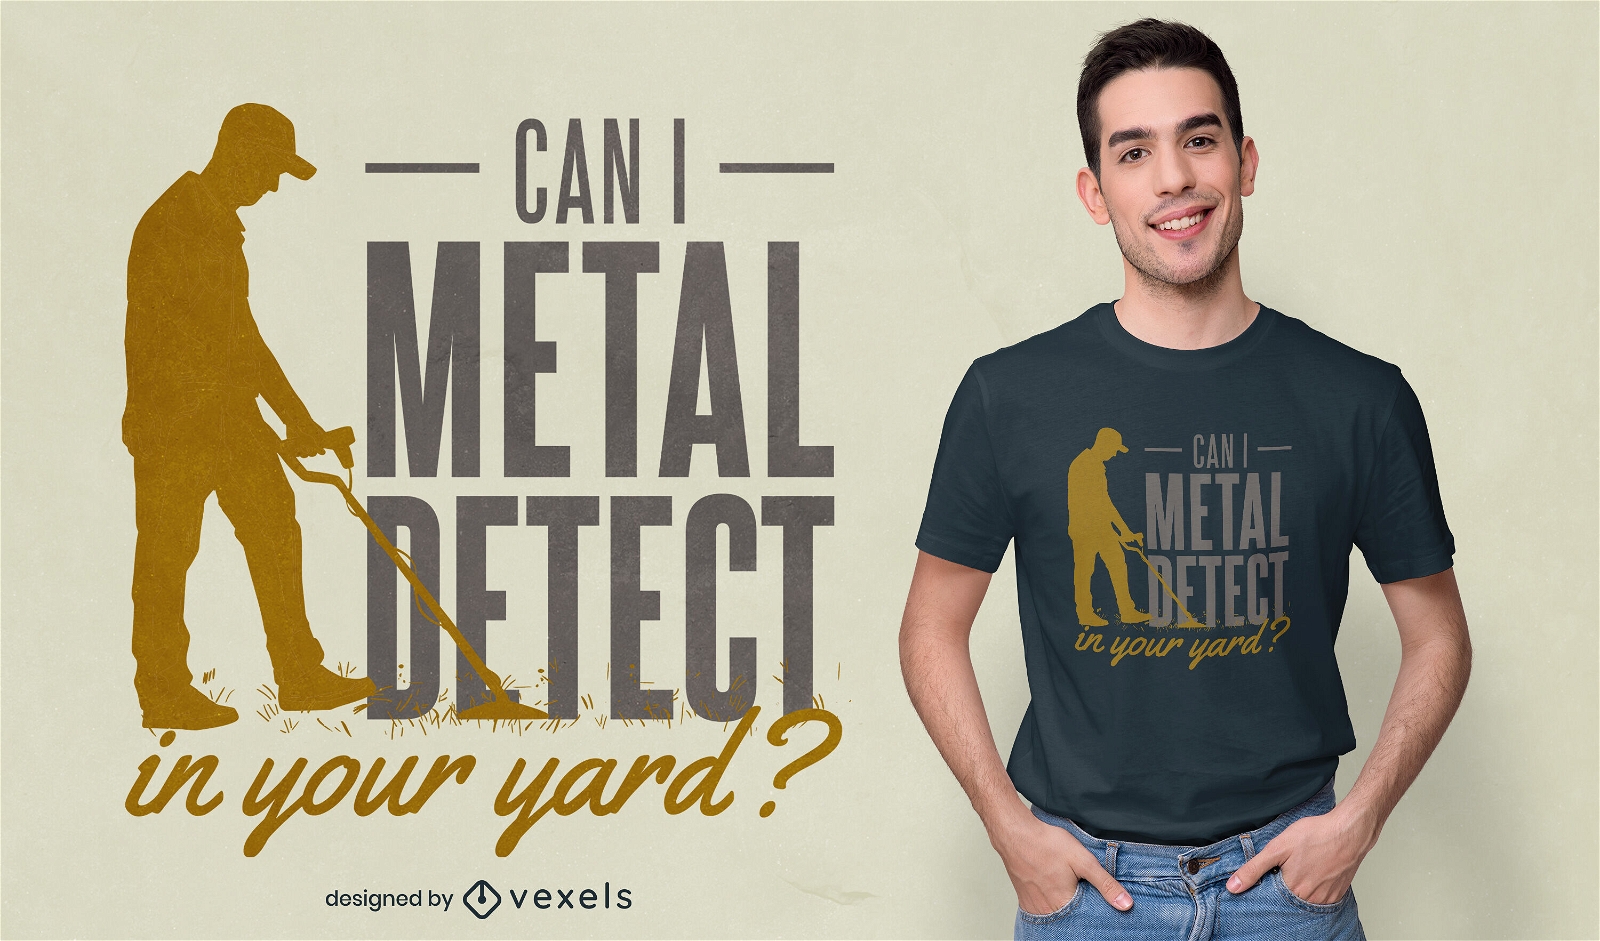 Mann mit Metalldetektor-Maschinen-T-Shirt-Design